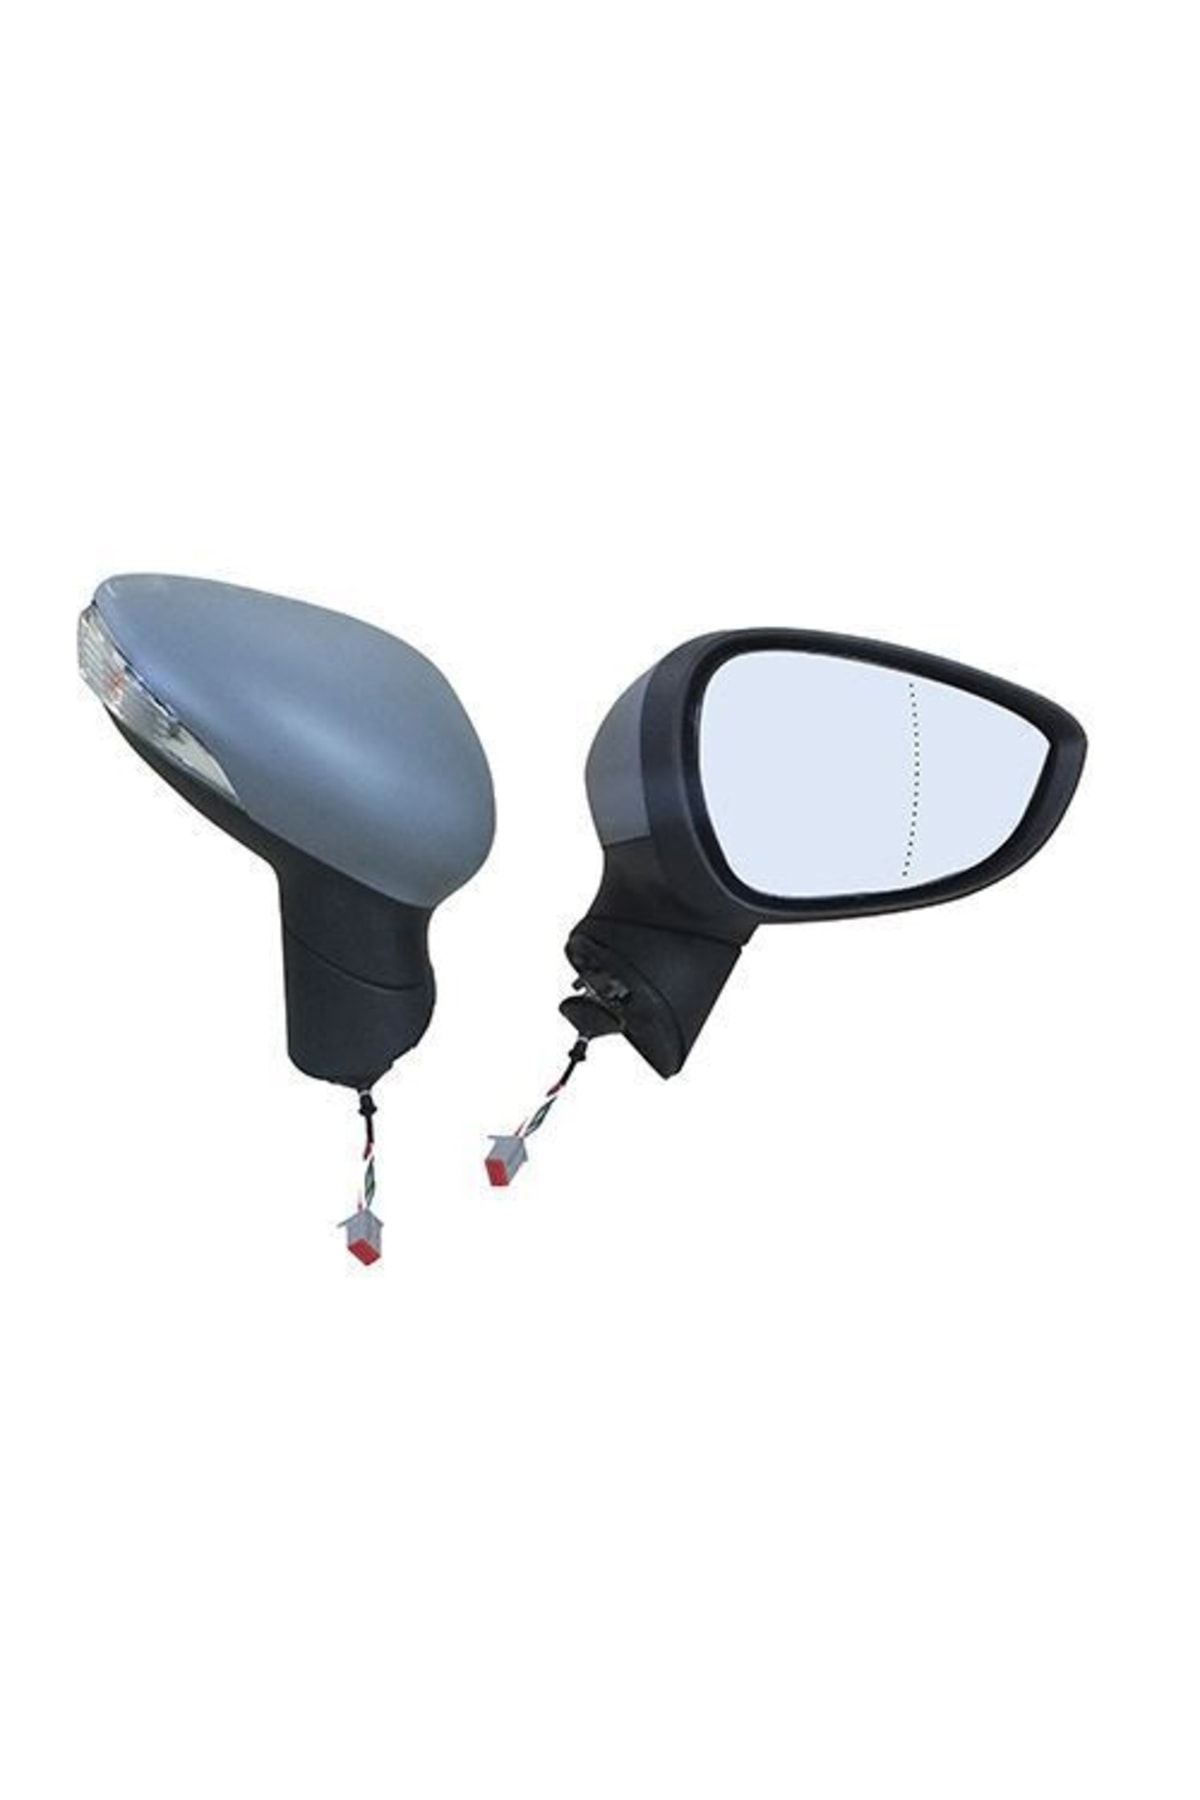 GVA 1037170 Dış Dikiz Aynası Sağ Elektrikli Isıtmalı Fiesta 08- Sinyalli Astarlı Asferikli Cam Vm-63